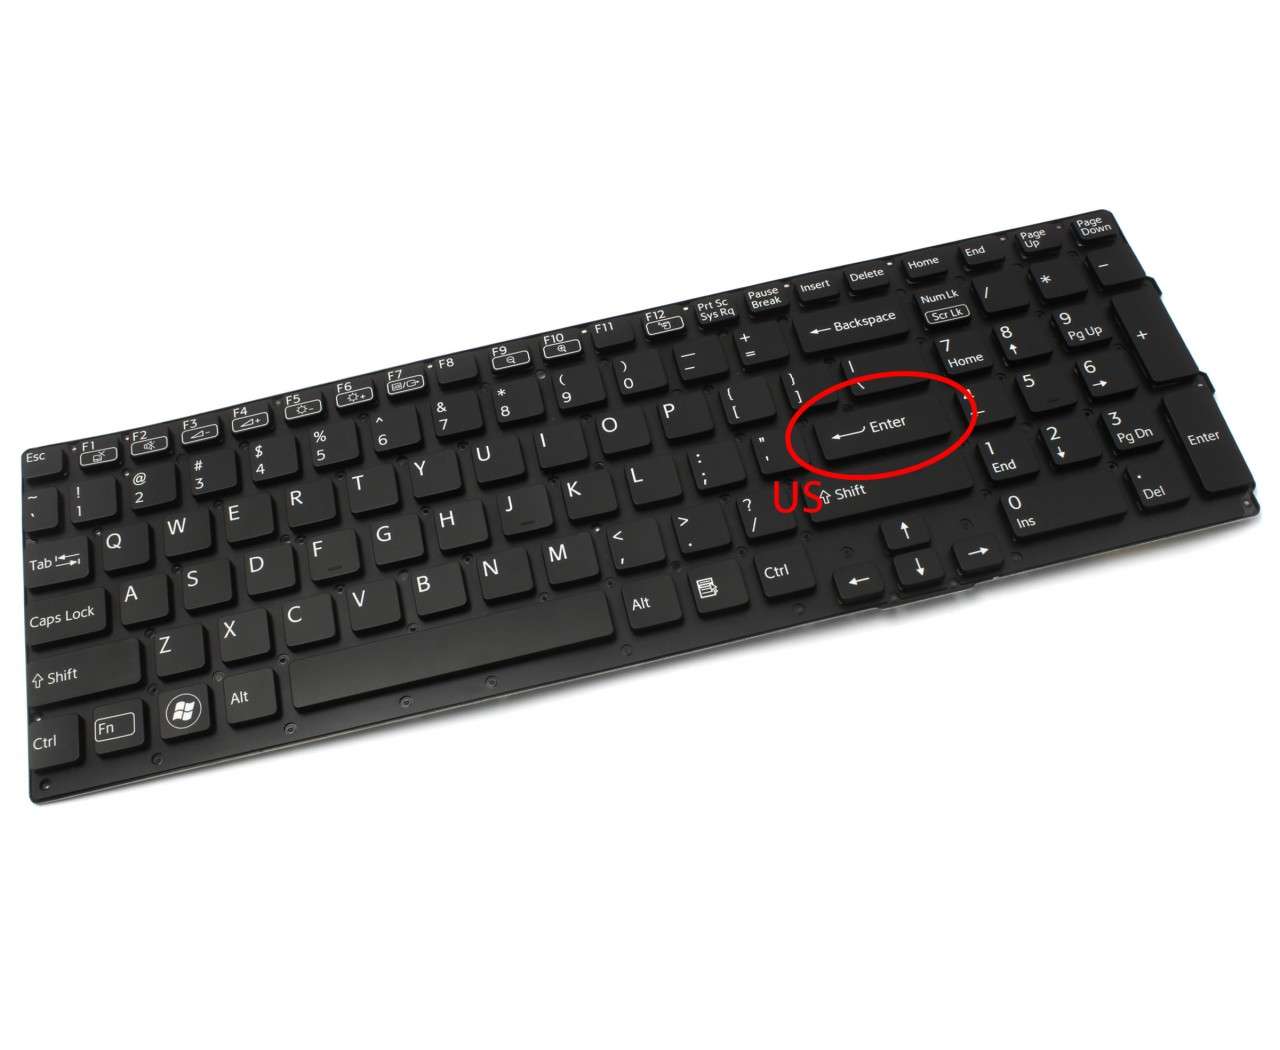 Tastatura neagra Sony Vaio VPCSE1E1E layout US fara rama enter mic